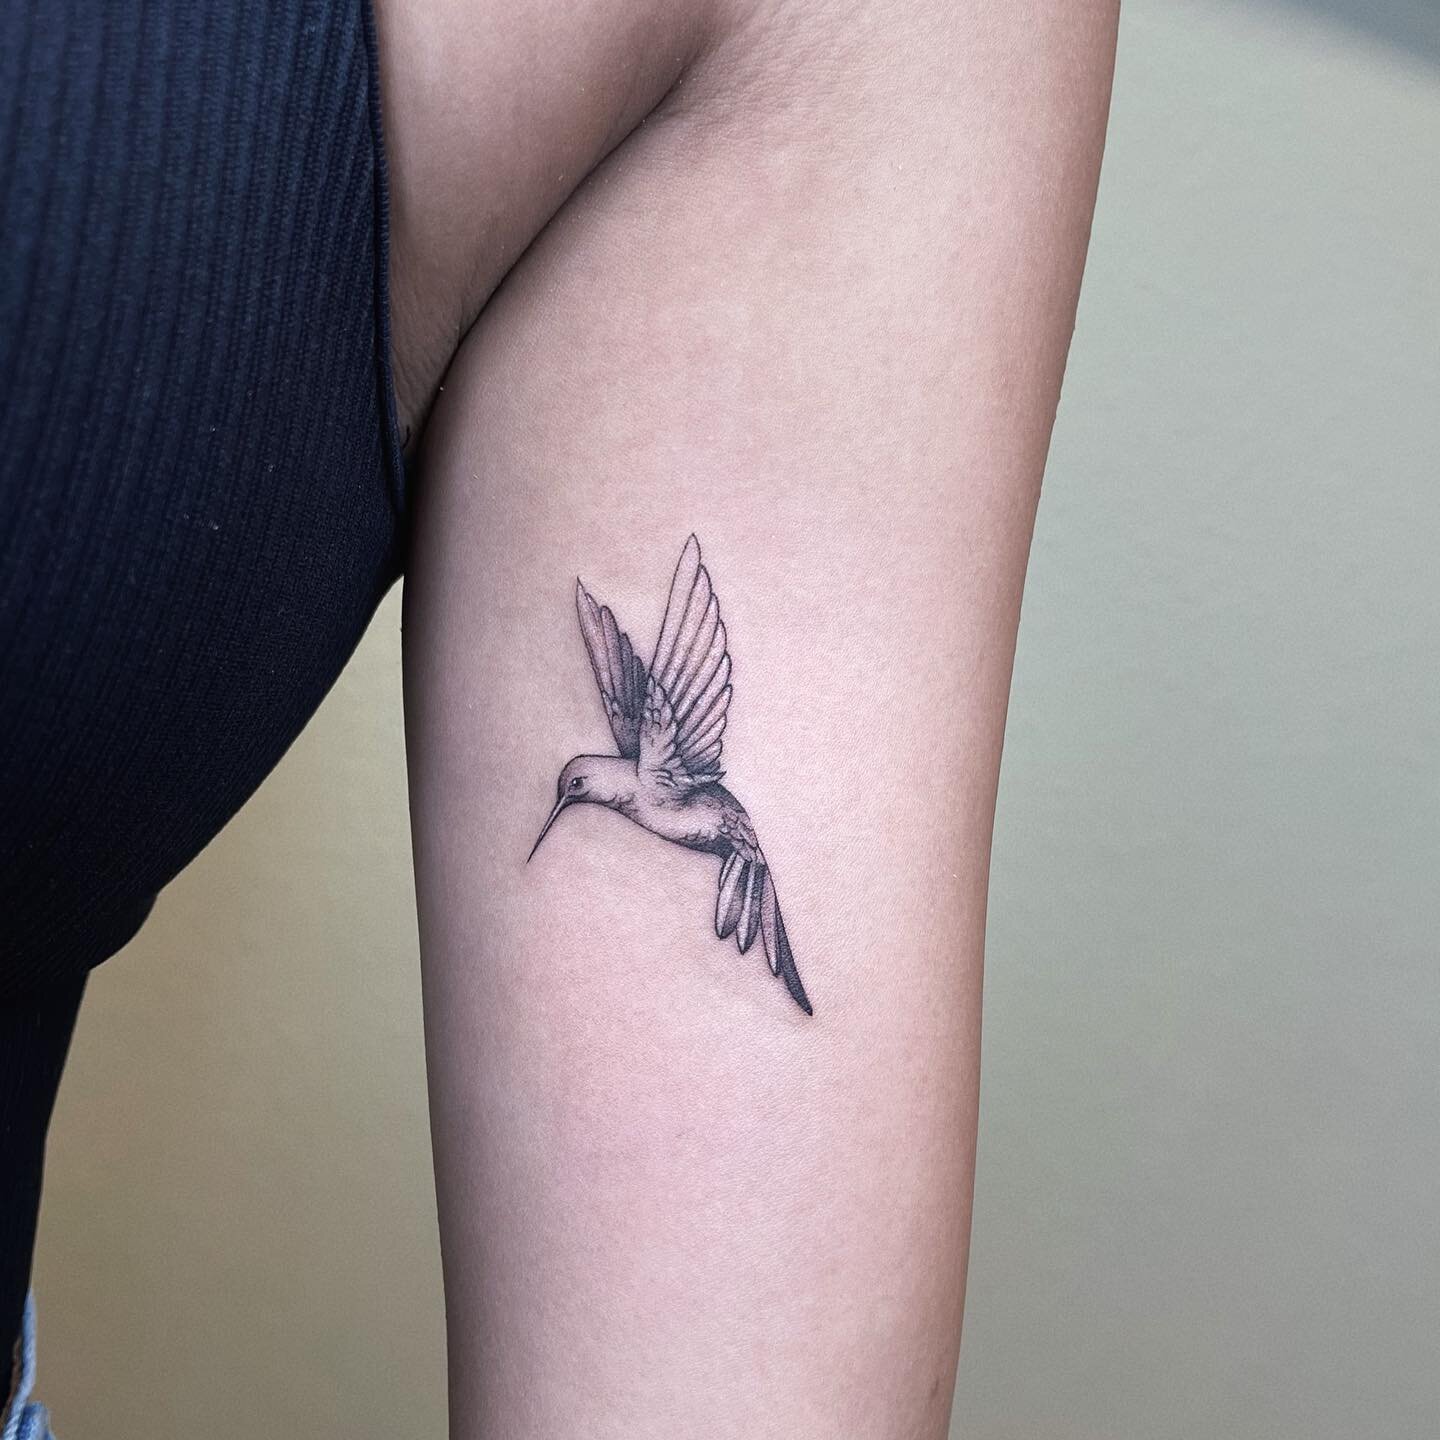 Humming Bird
.
.
#tattoos#tattooideas#tattooart#tattooink#tattoowork#tattooartist#tattoodesign#tattoolife#tattooink#inked#inktattoo#tattoooftheday#blacktattoo#cutetattoo #smalltattoos #linearttattoo #minimalisttattoo #lineworktattoo